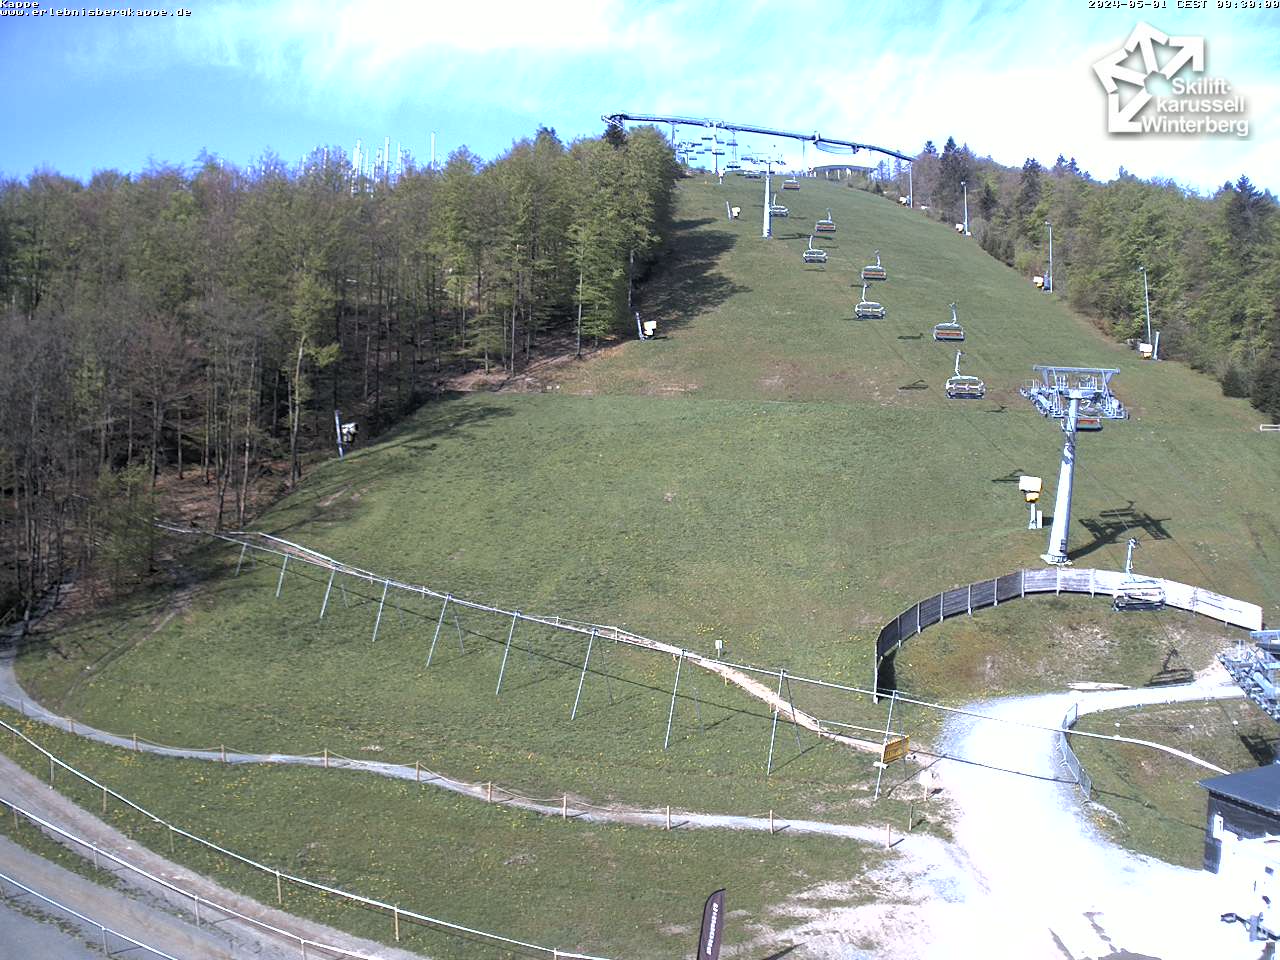 Webcam Kappe - Skiliftkarussell Winterberg